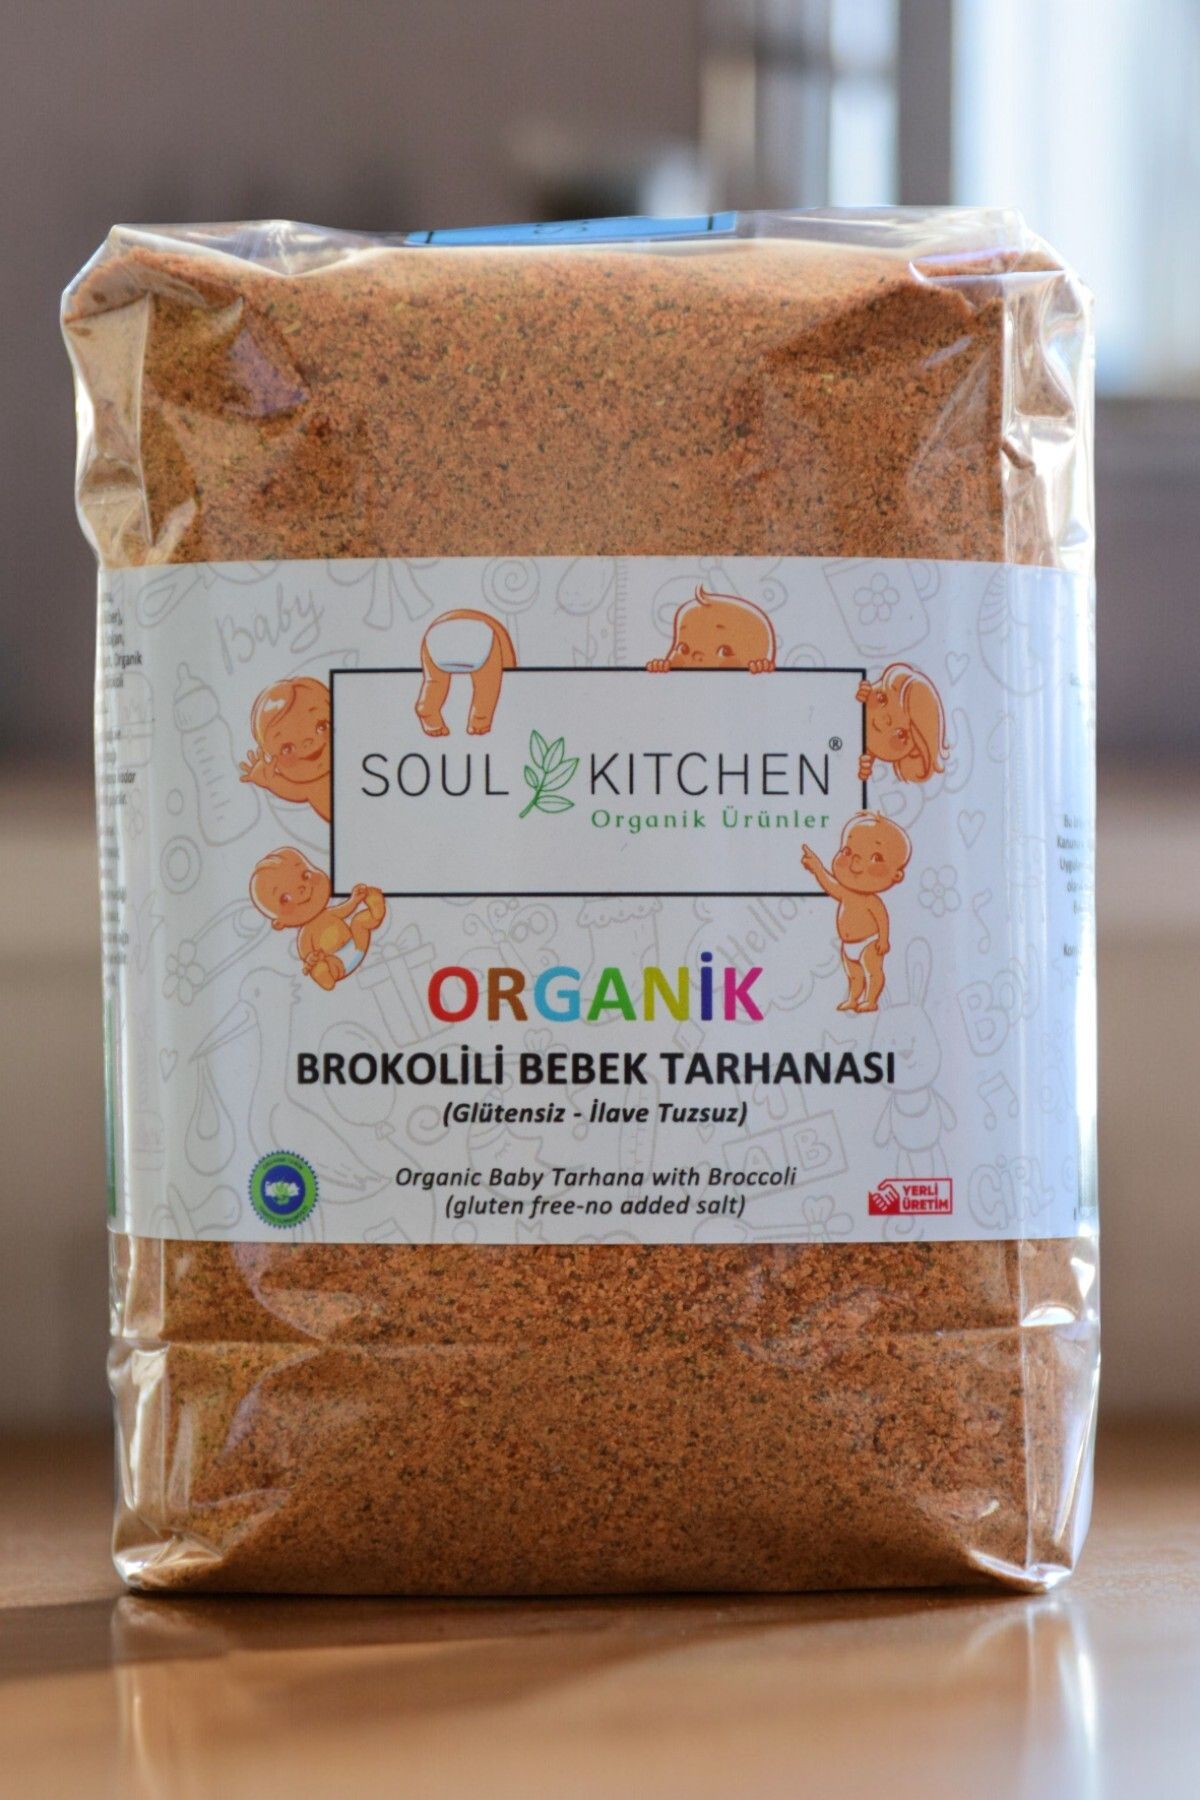 Soul Kitchen Organik Ürünler Organik Brokolili Bebek Tarhanası 500gr (Glütensiz) (İlave Tuzsuz)